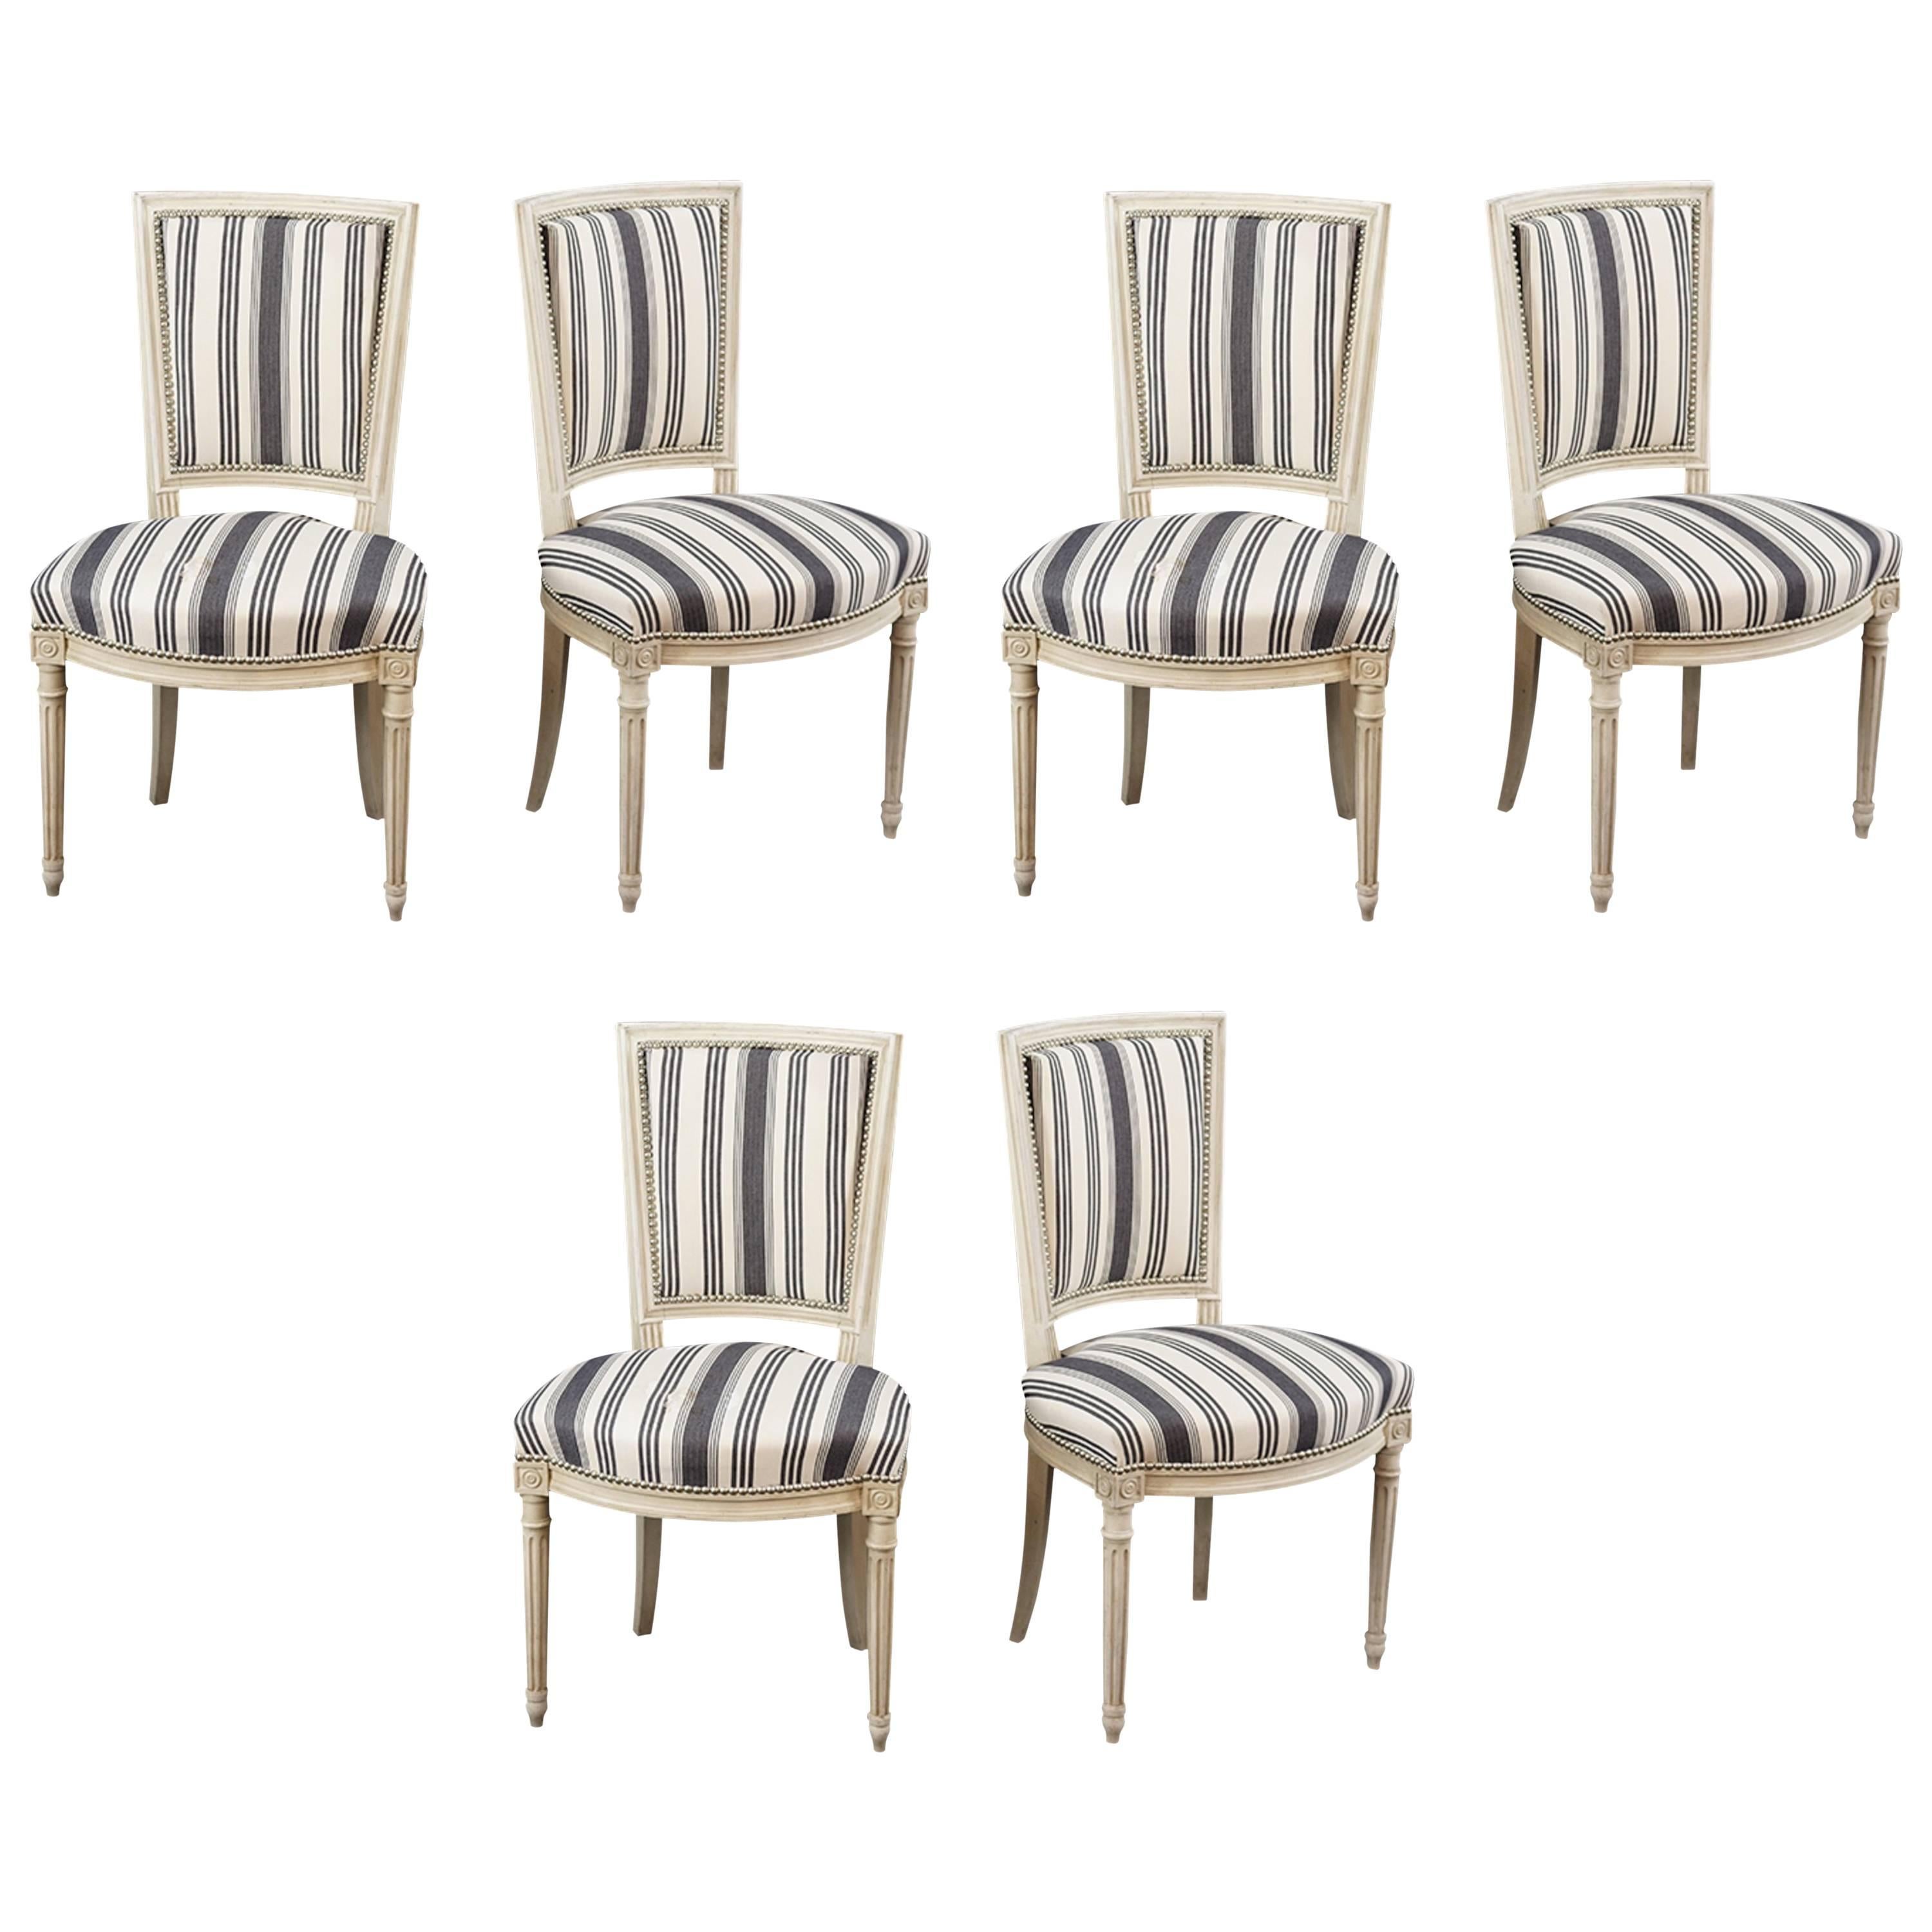 Magnifique ensemble de six chaises d'appoint de style Louis XVI recouvertes d'une bande bleue et blanche en vente